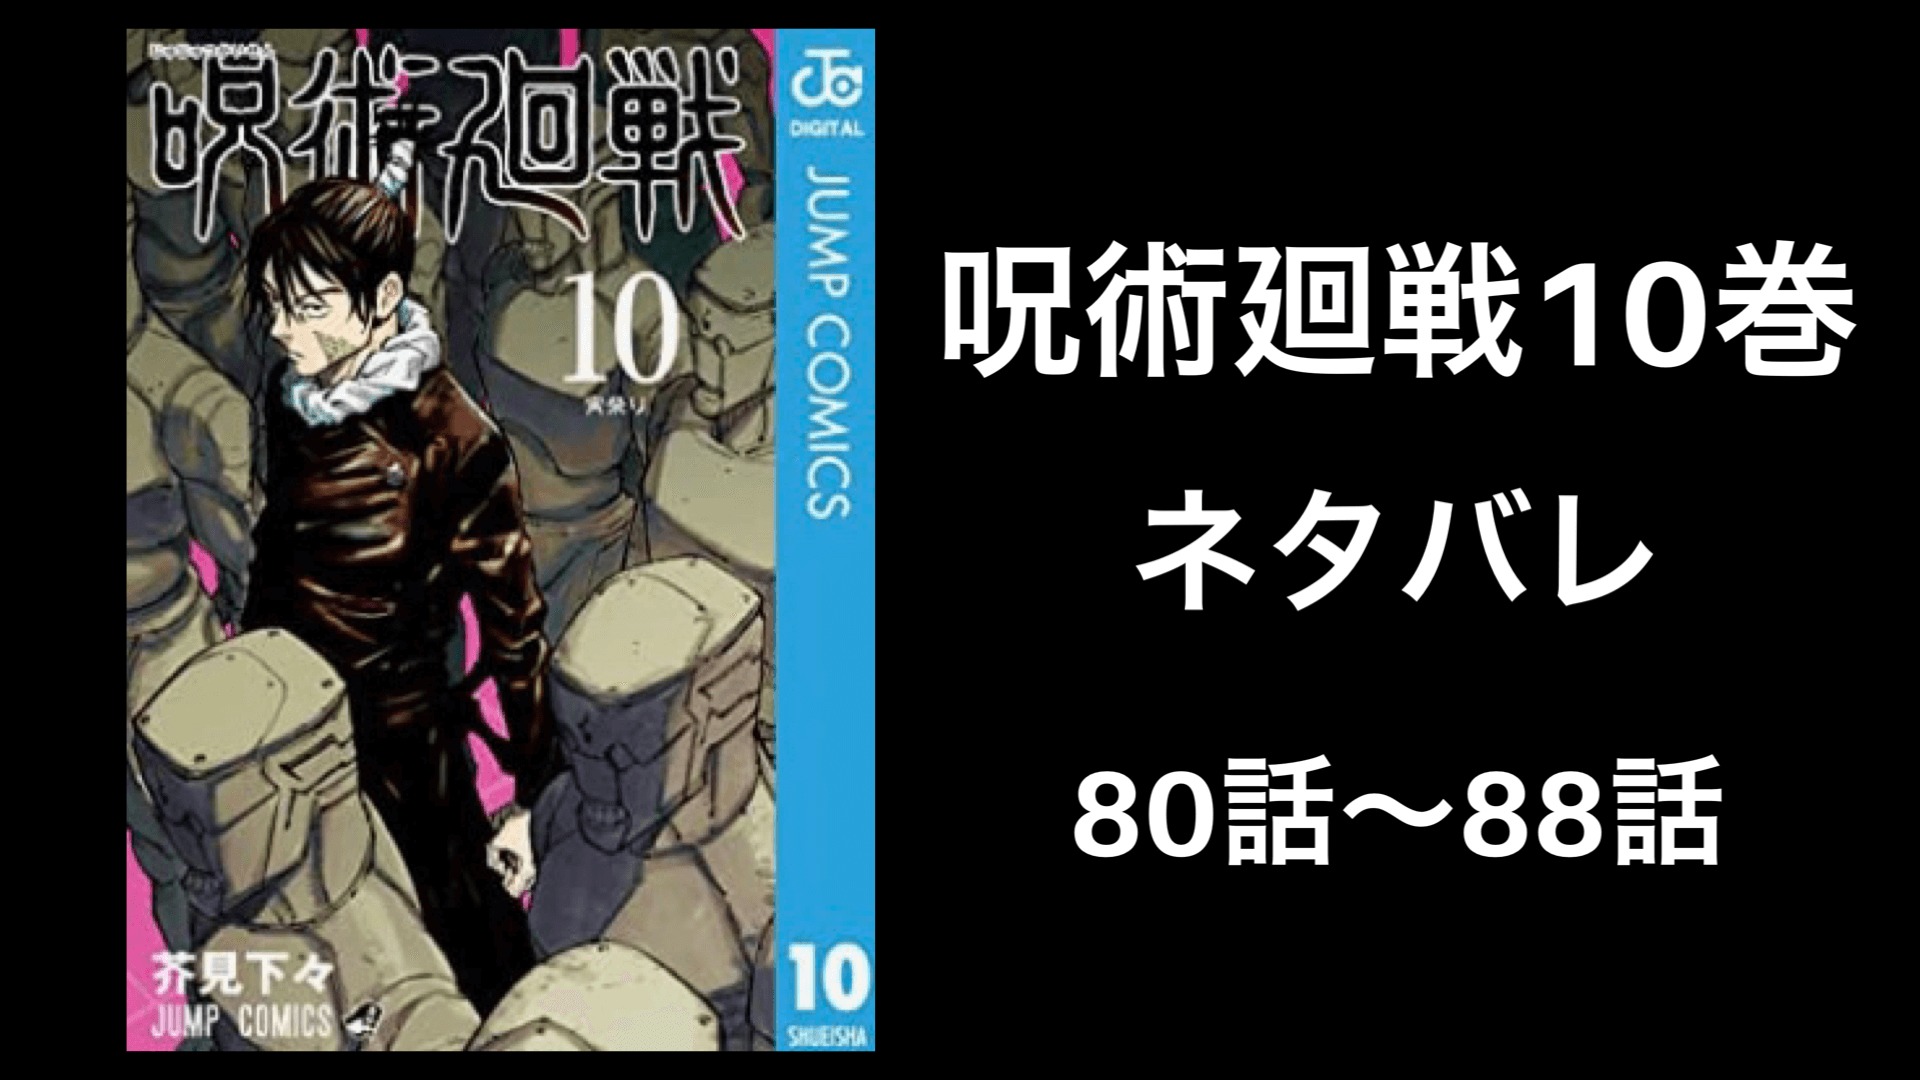 呪術廻戦10巻ネタバレ 無料で80話から話を徹底解説 完全版